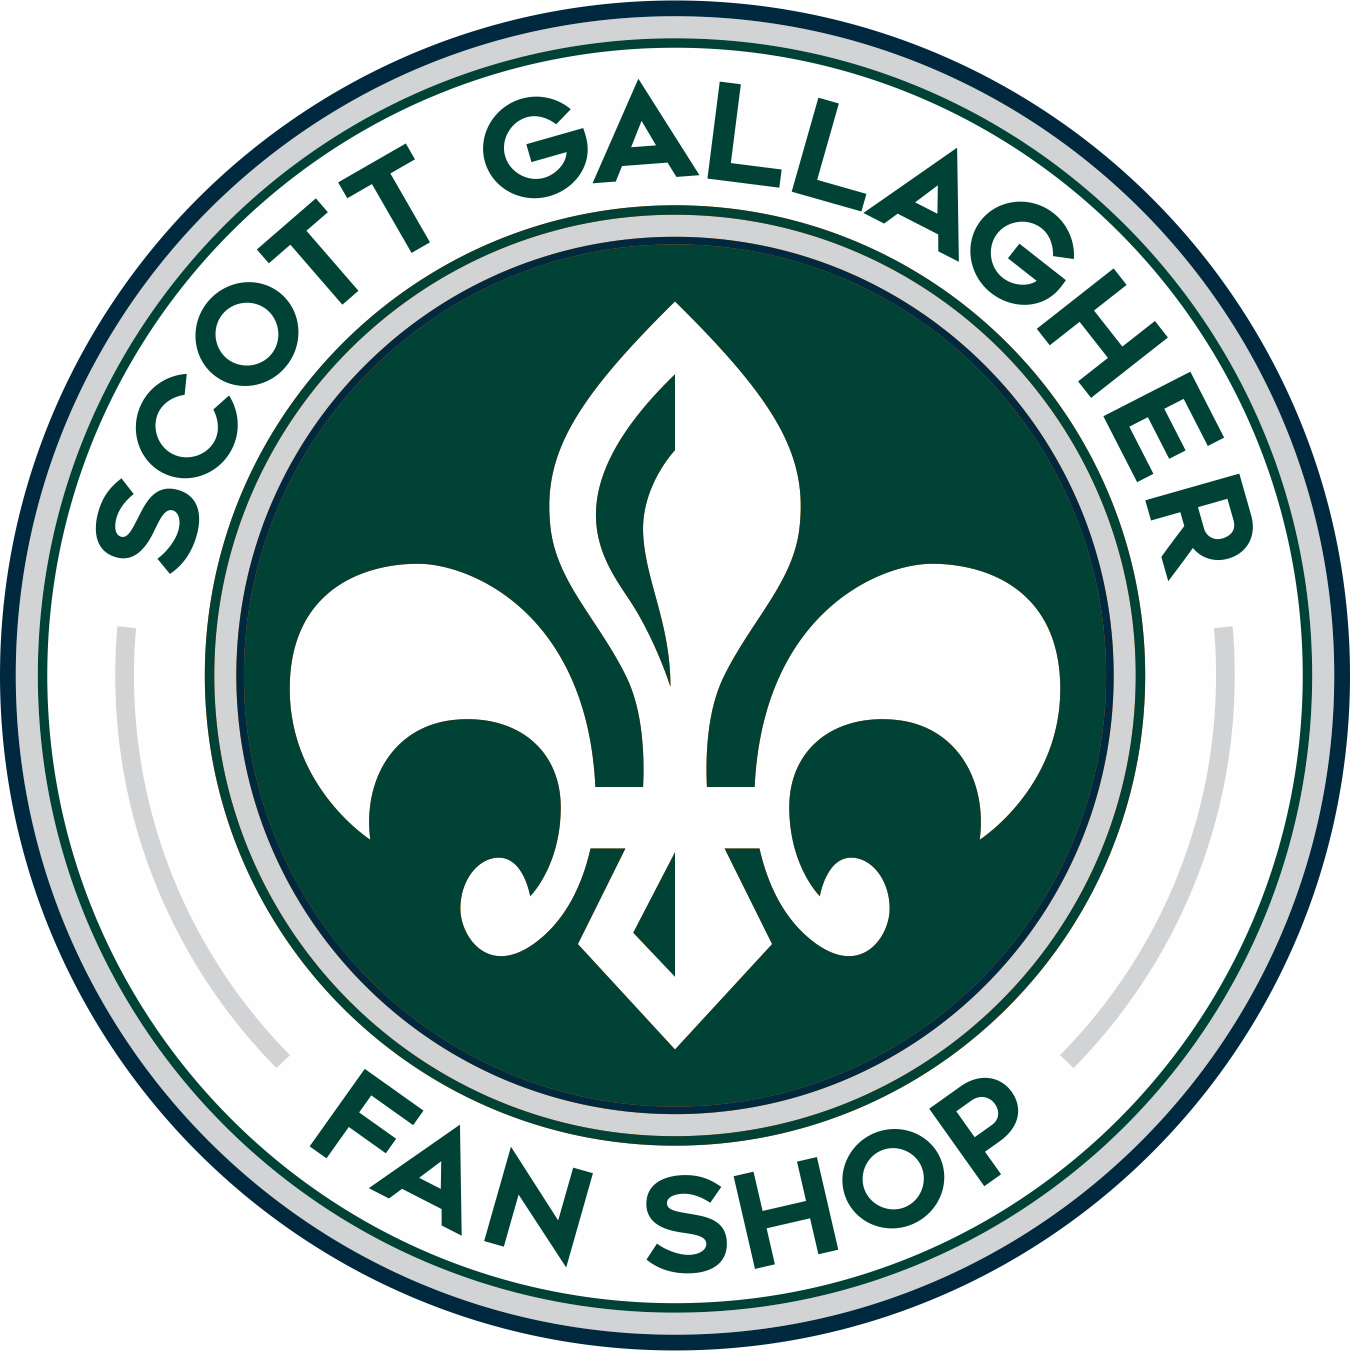 Scott Gallagher Fan Shop